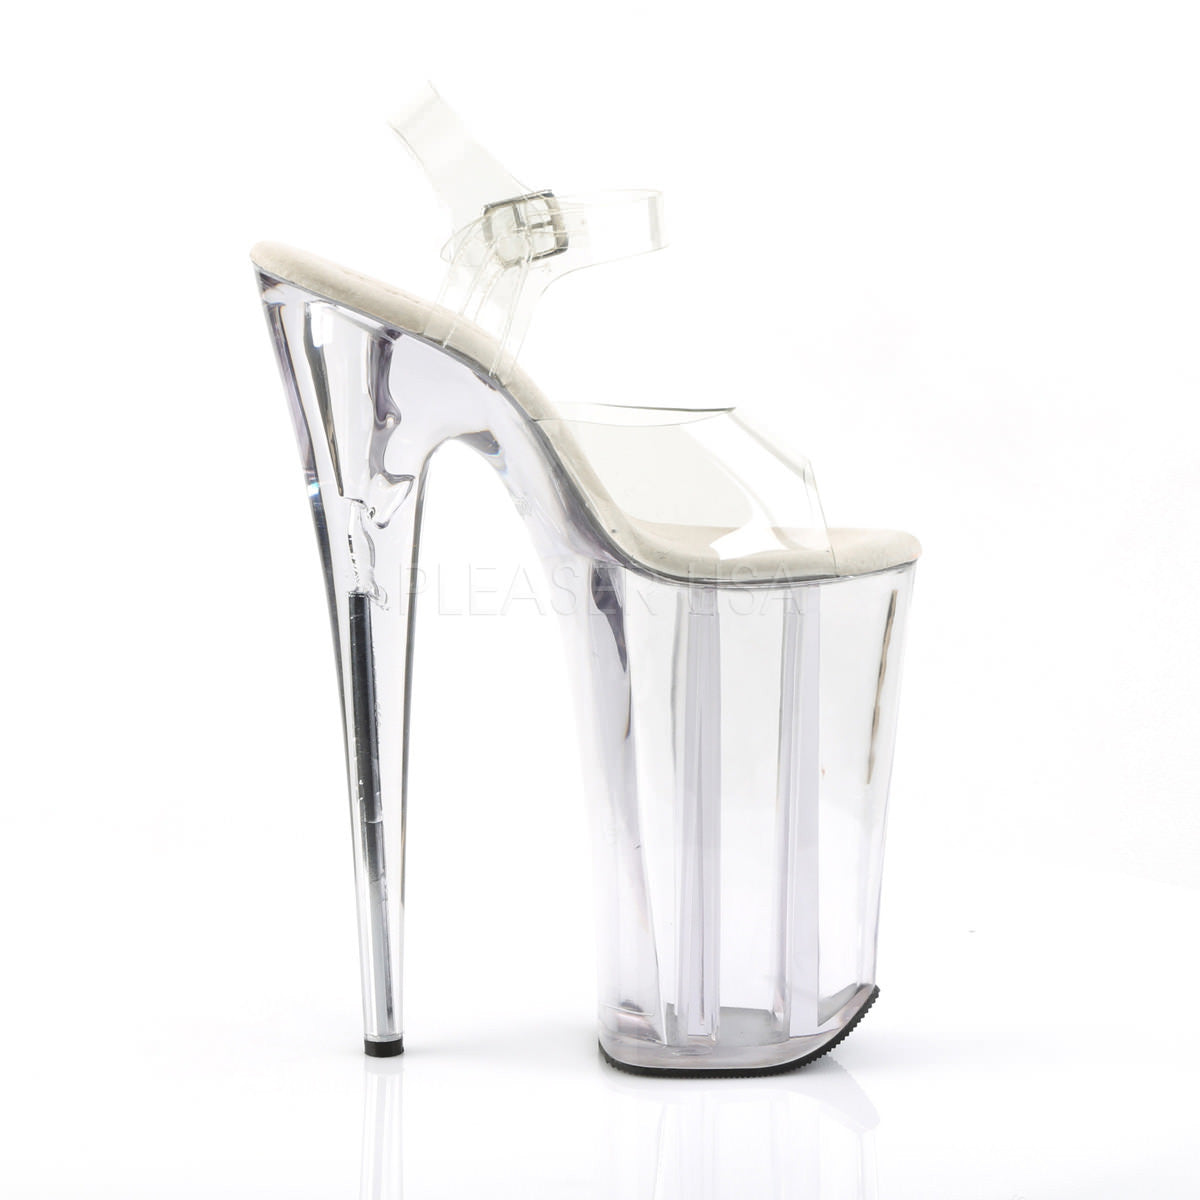 woman shoes new arrivals 2021 light| Alibaba.com